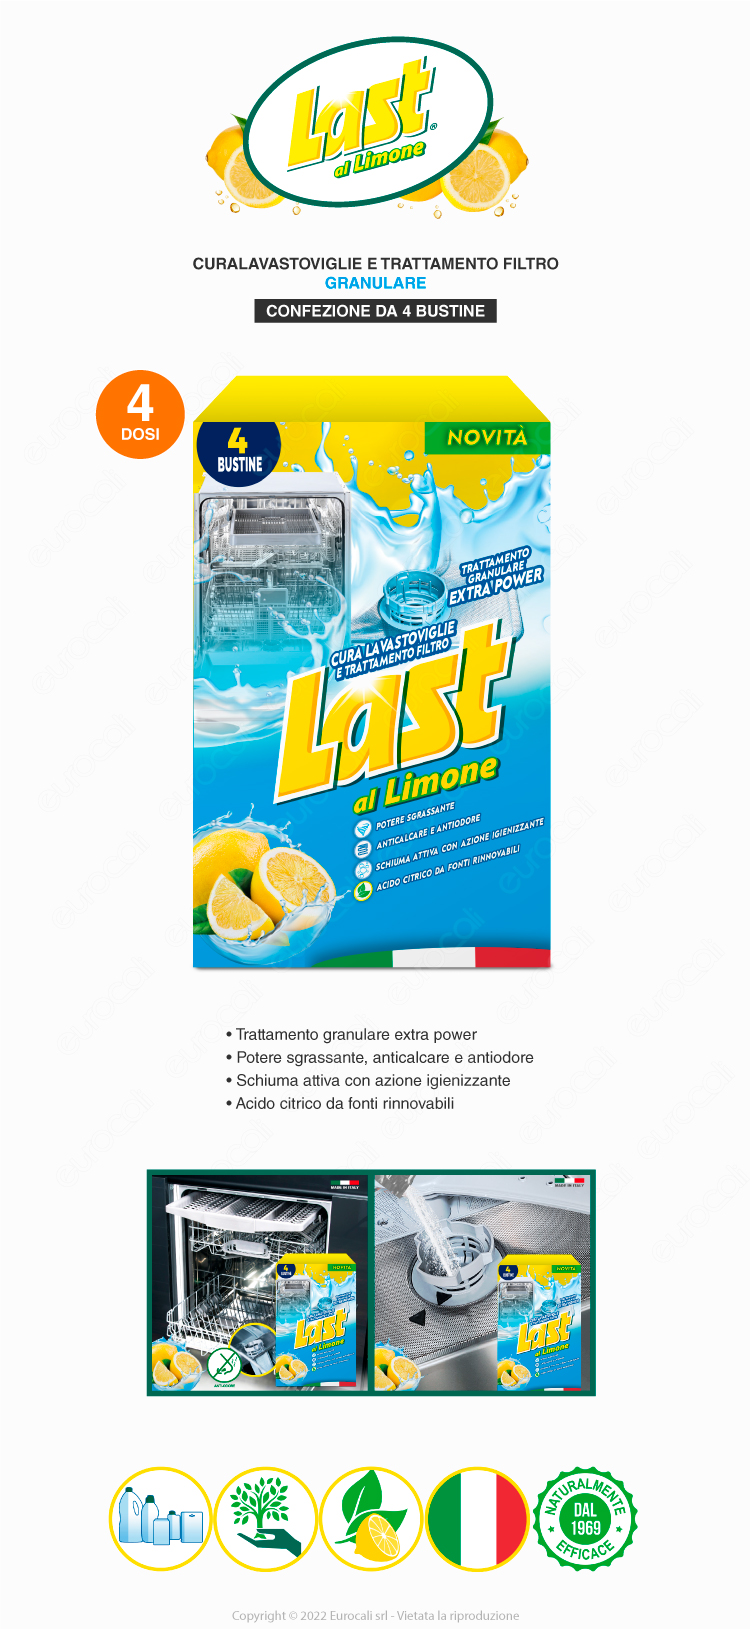 last cura lavastoviglie e trattamento filtro granulare extra power al limone 4 bustine